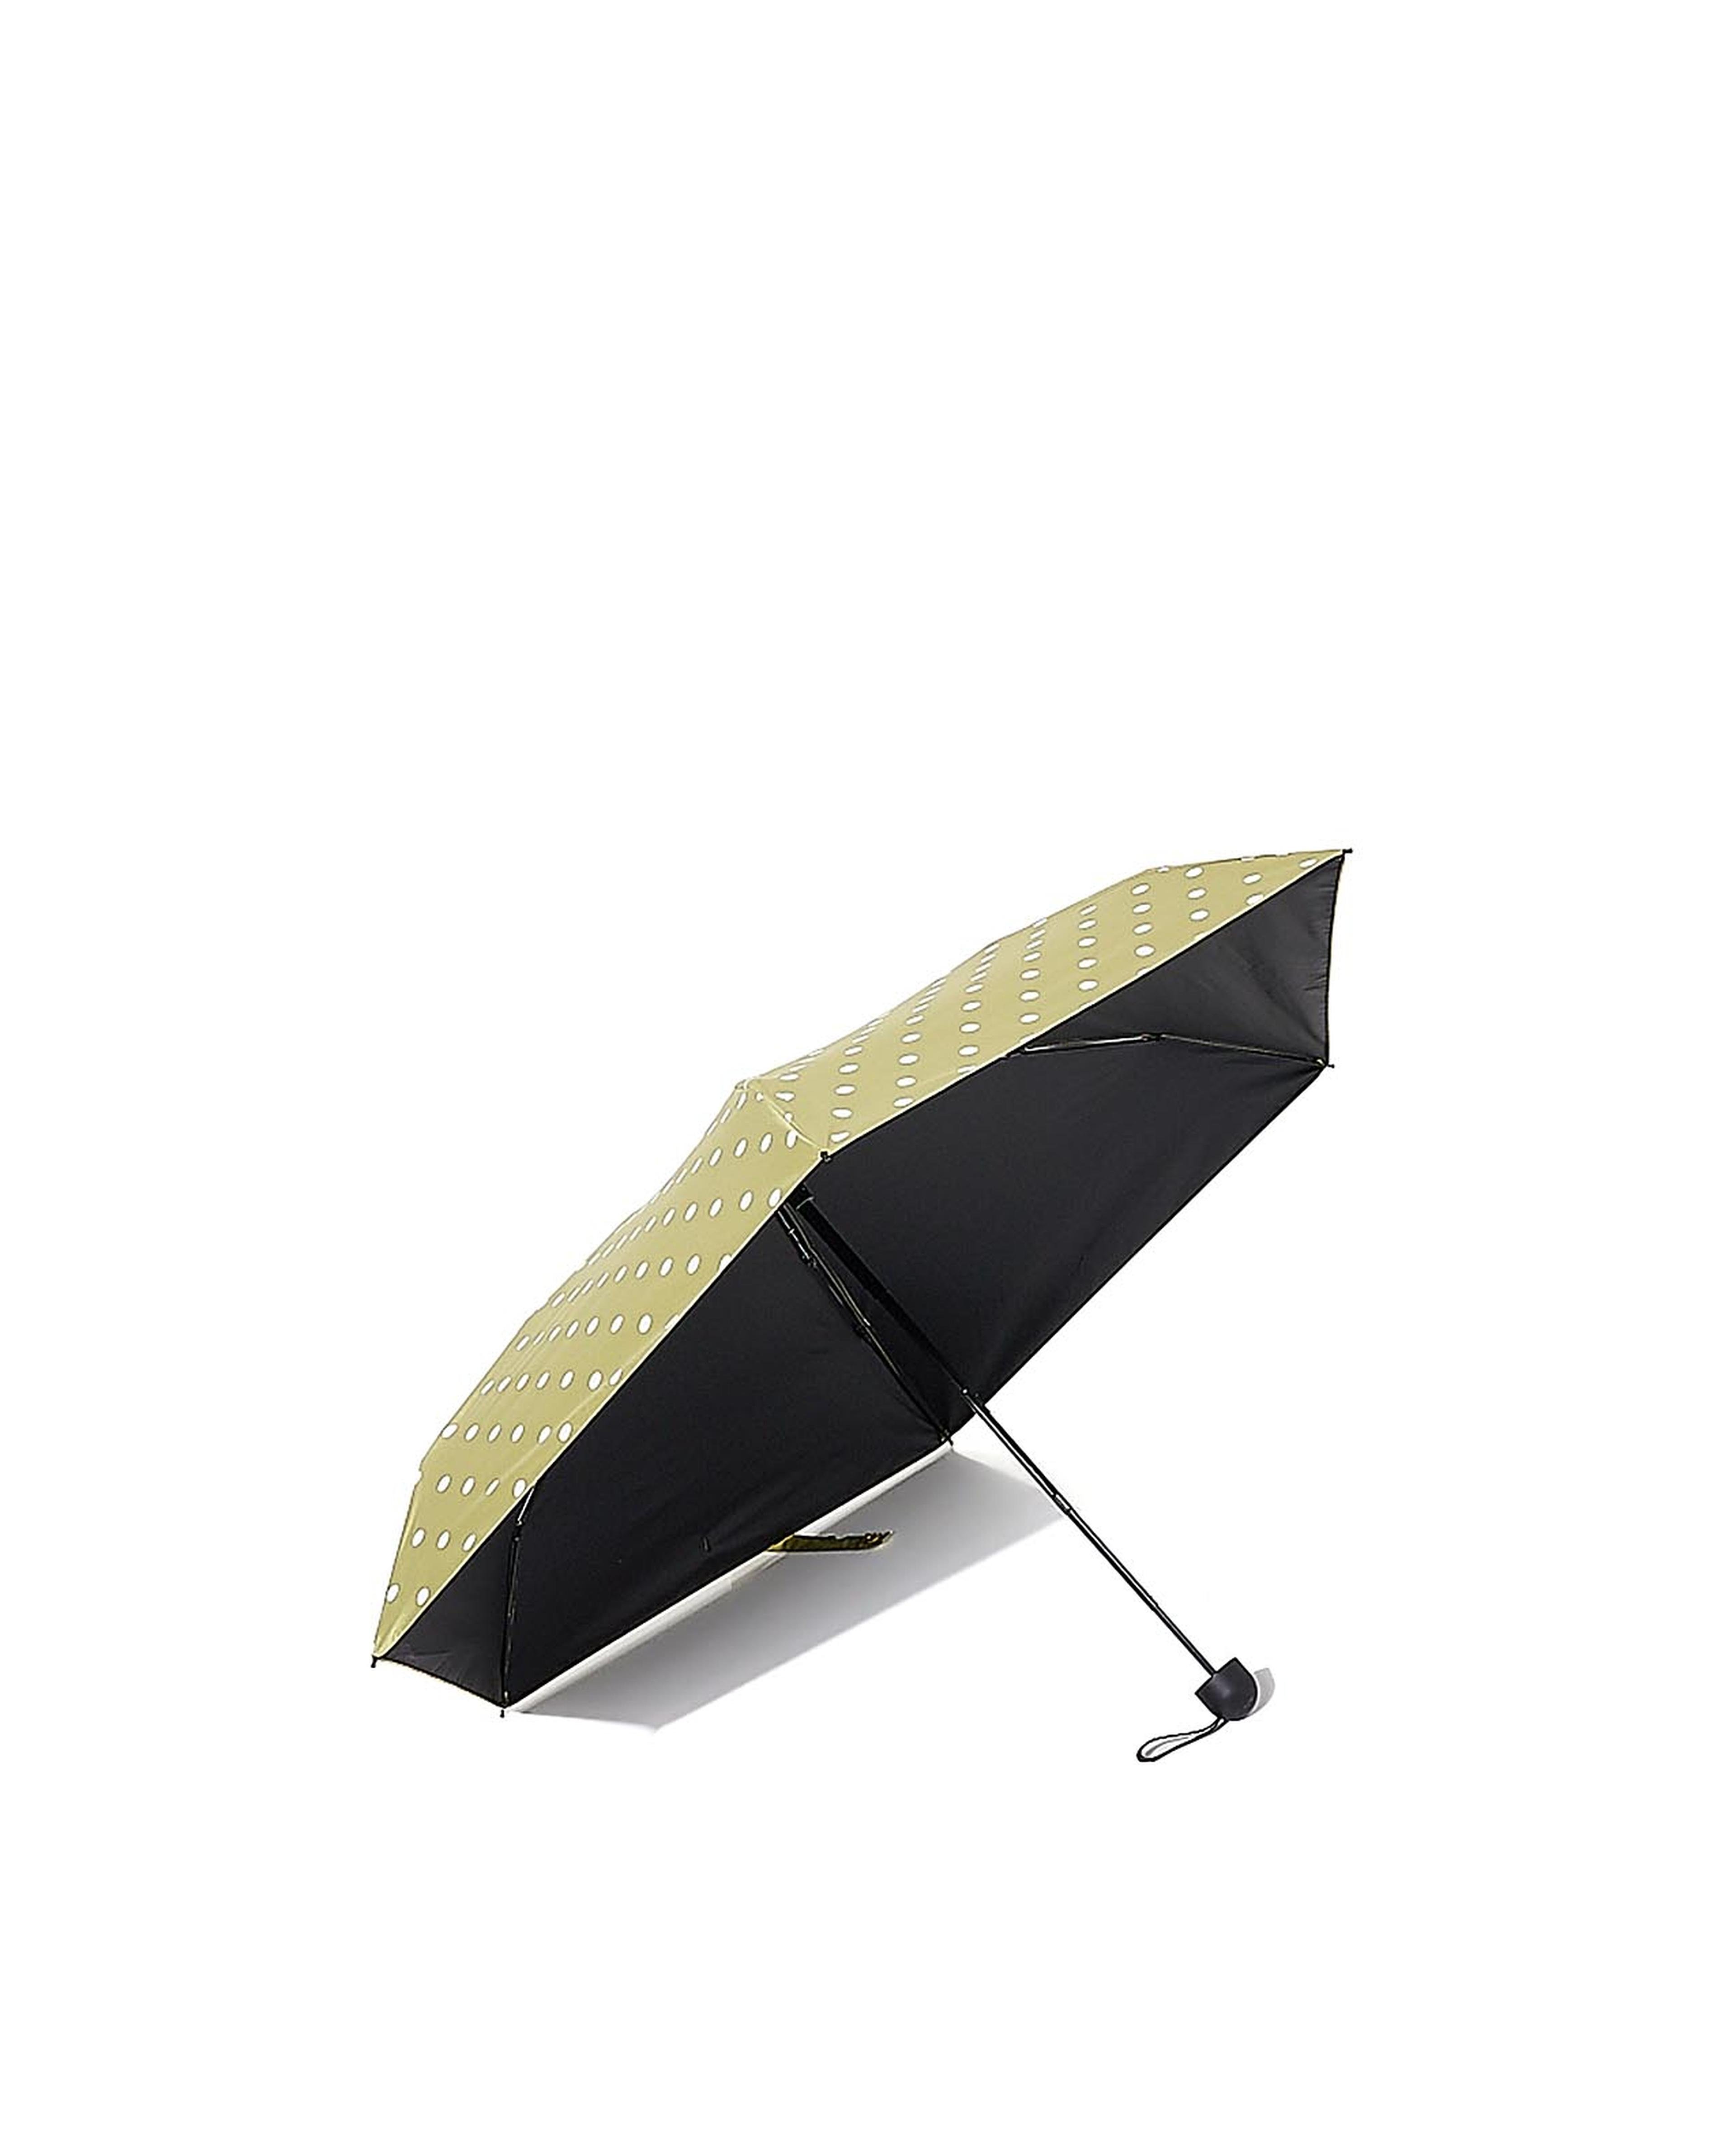 Polka Dot Printed Umbrella